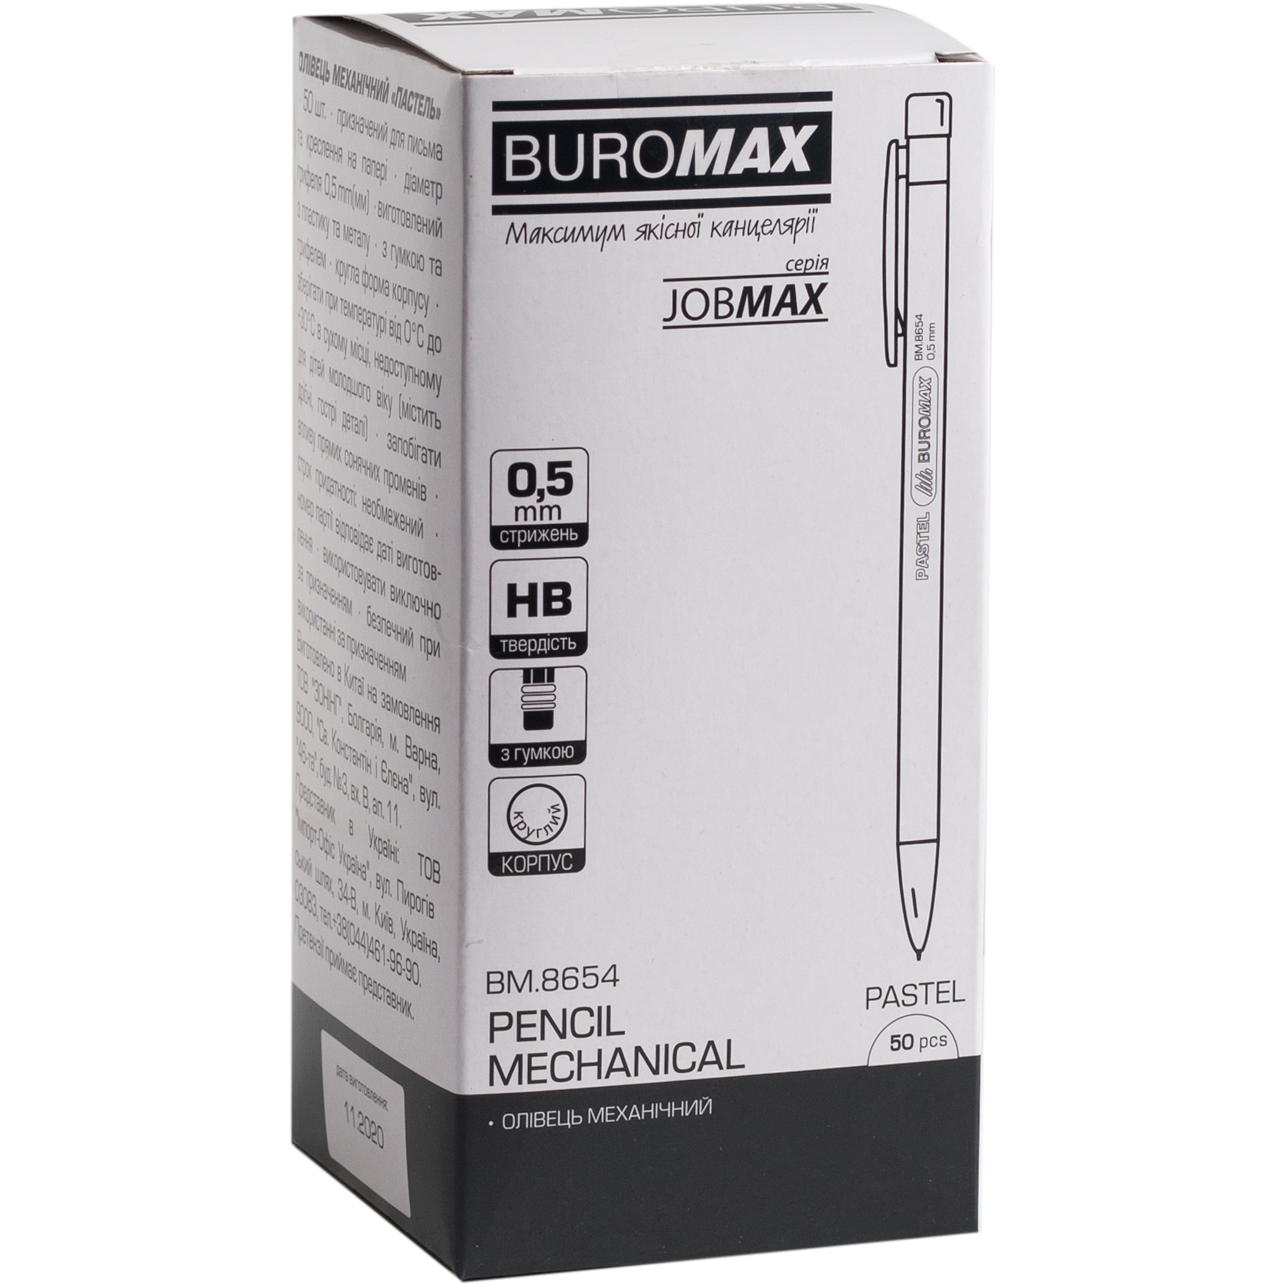 Олівець механічний Buromax Jobmax 0.5 мм бірюзовий (BM.8654-06) - фото 2